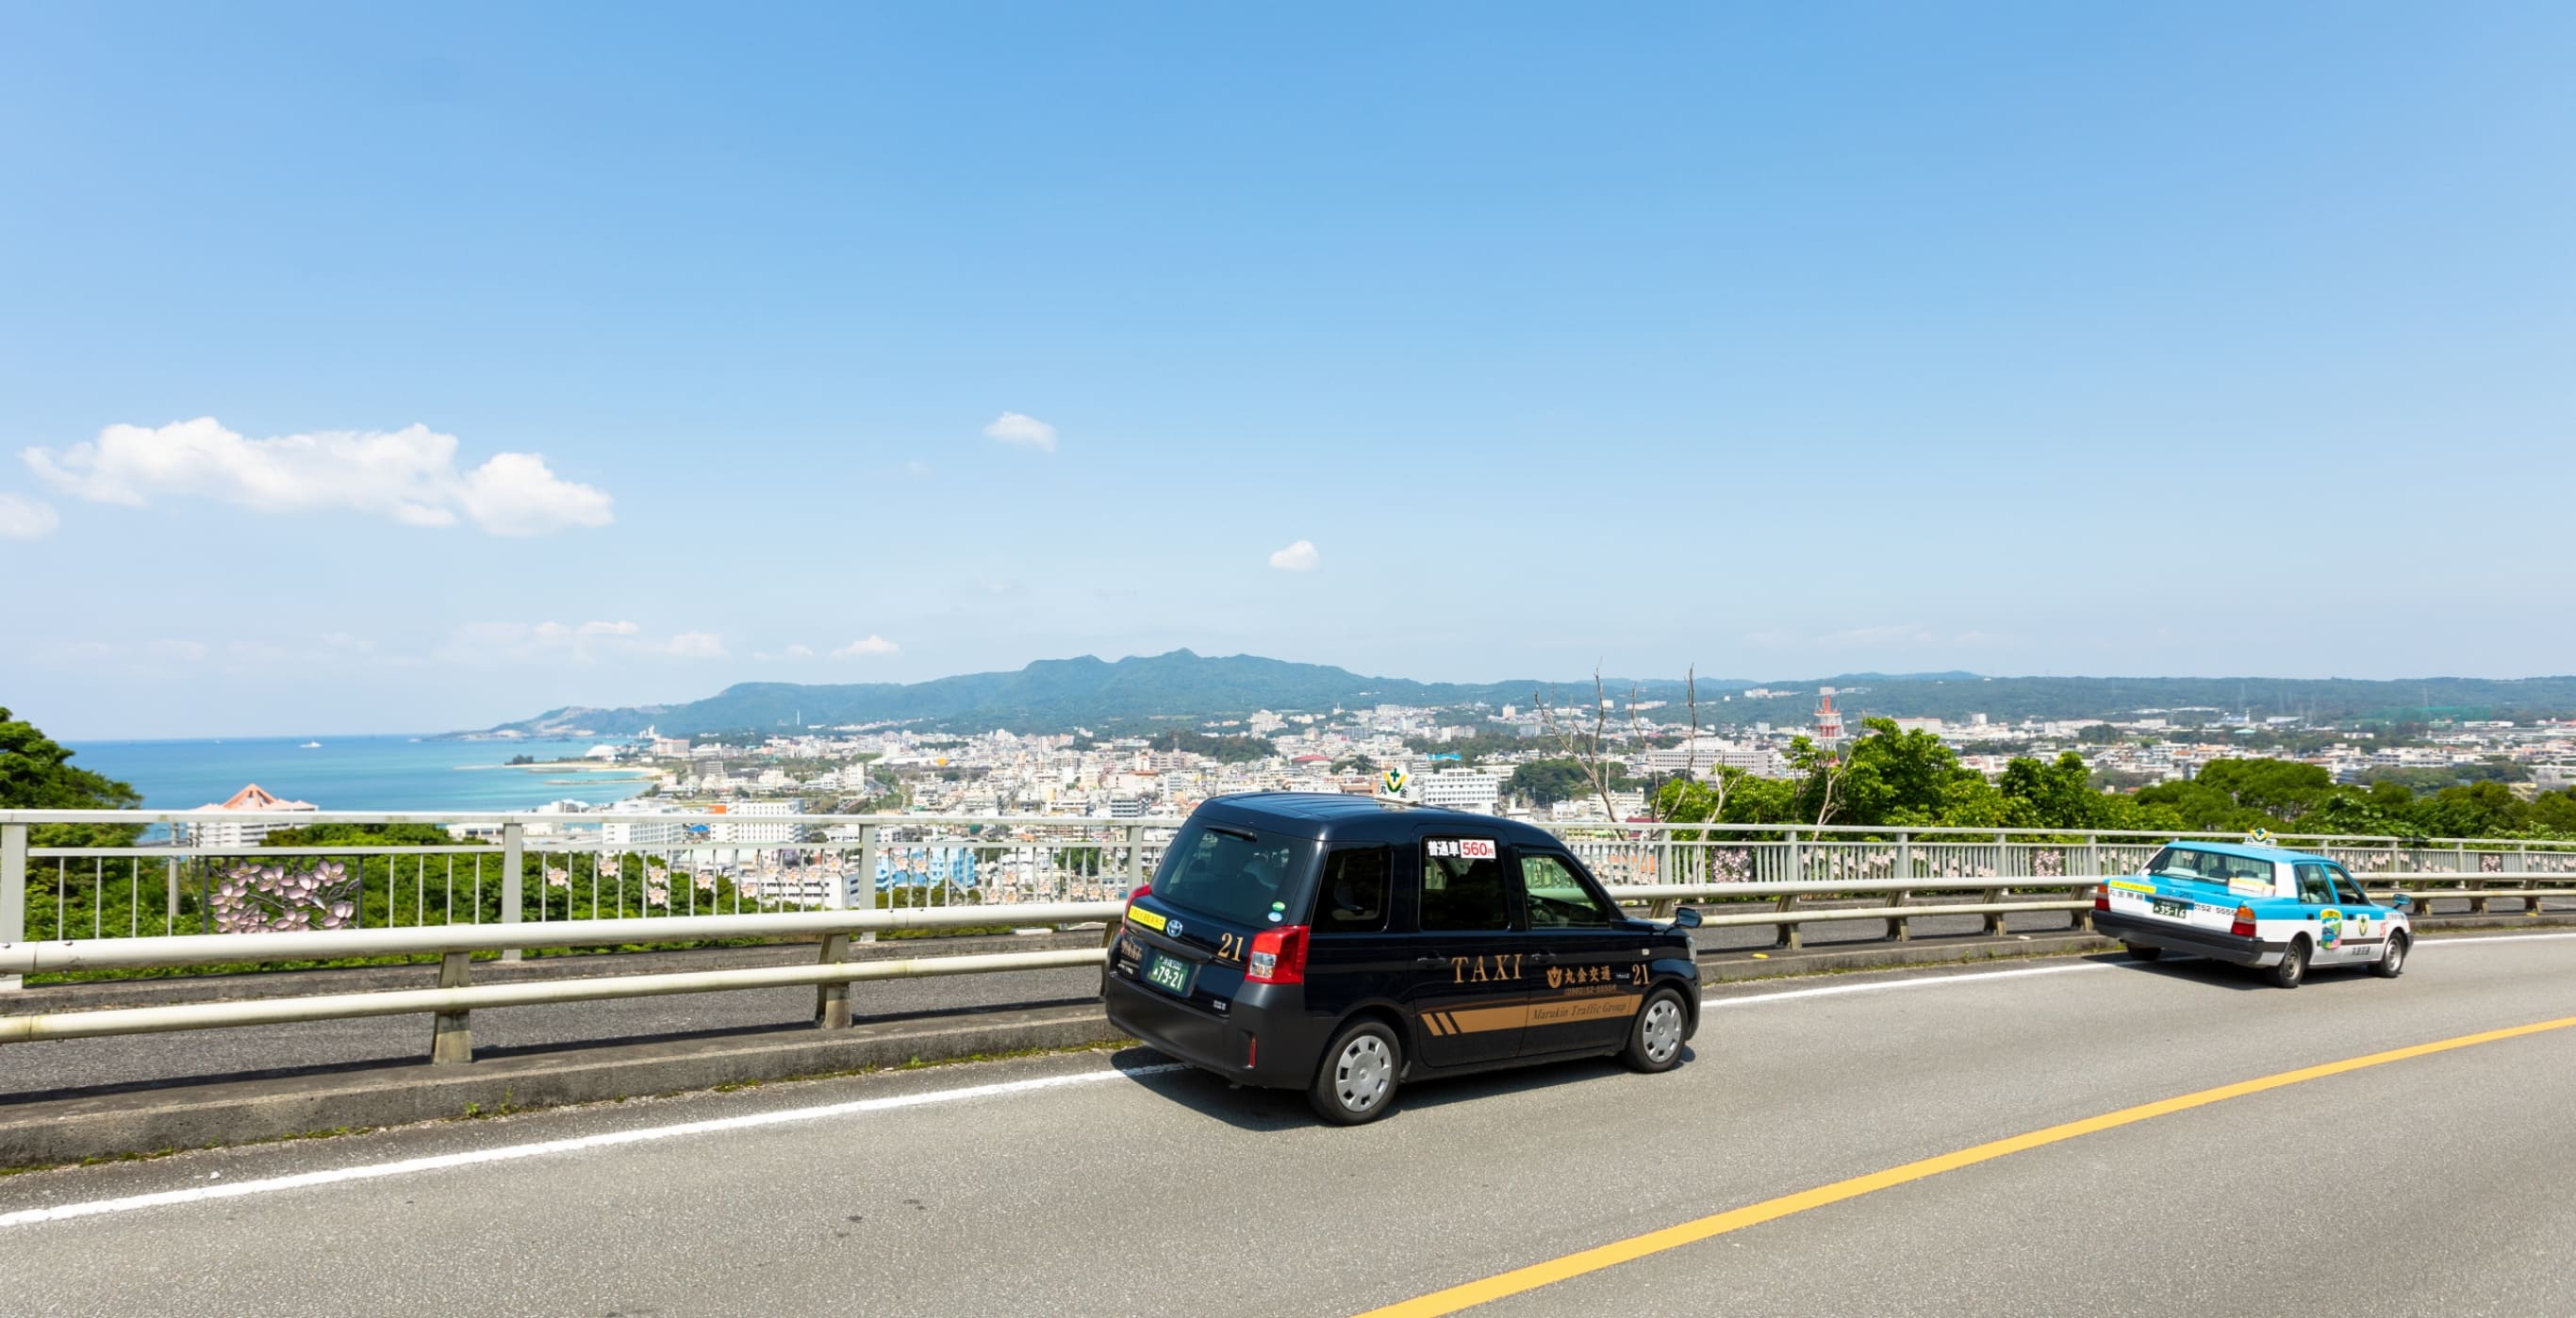 沖縄北部の観光は丸金交通観光タクシー 安心安全と素敵な思い出を。